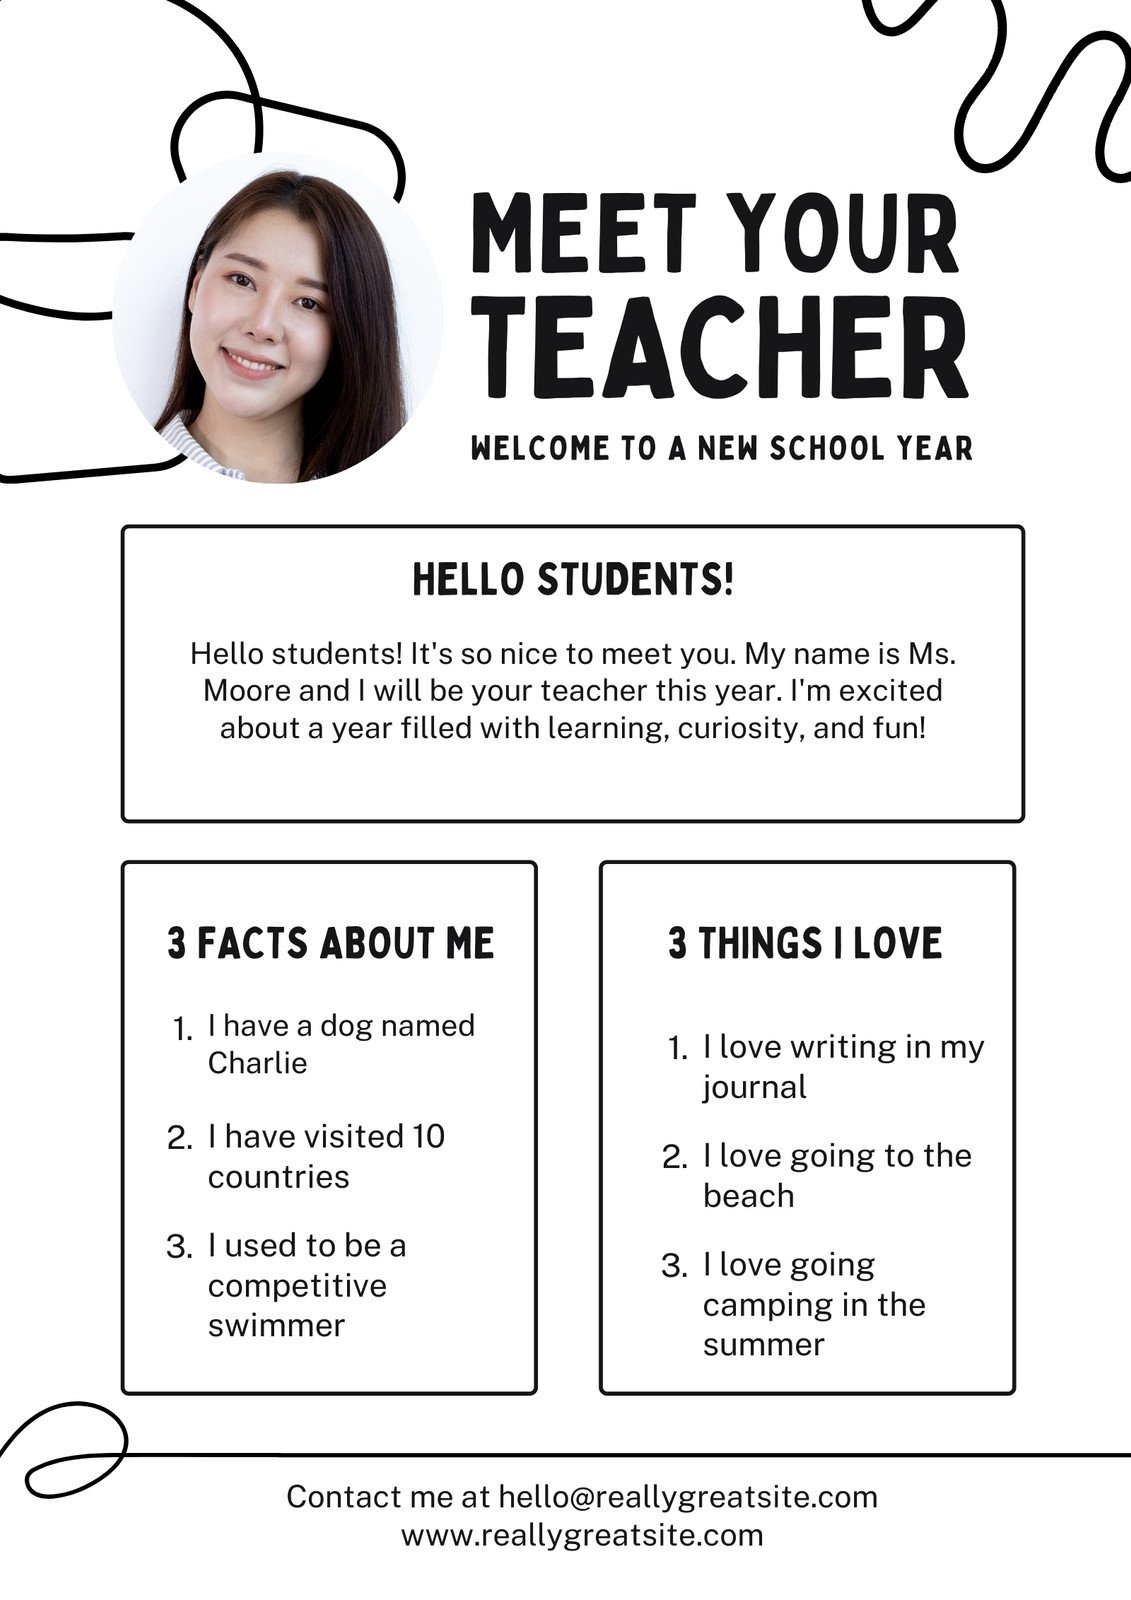 meet-the-teacher-flyer-bonus-sign-in-sheet-google-slides-etsy-sign